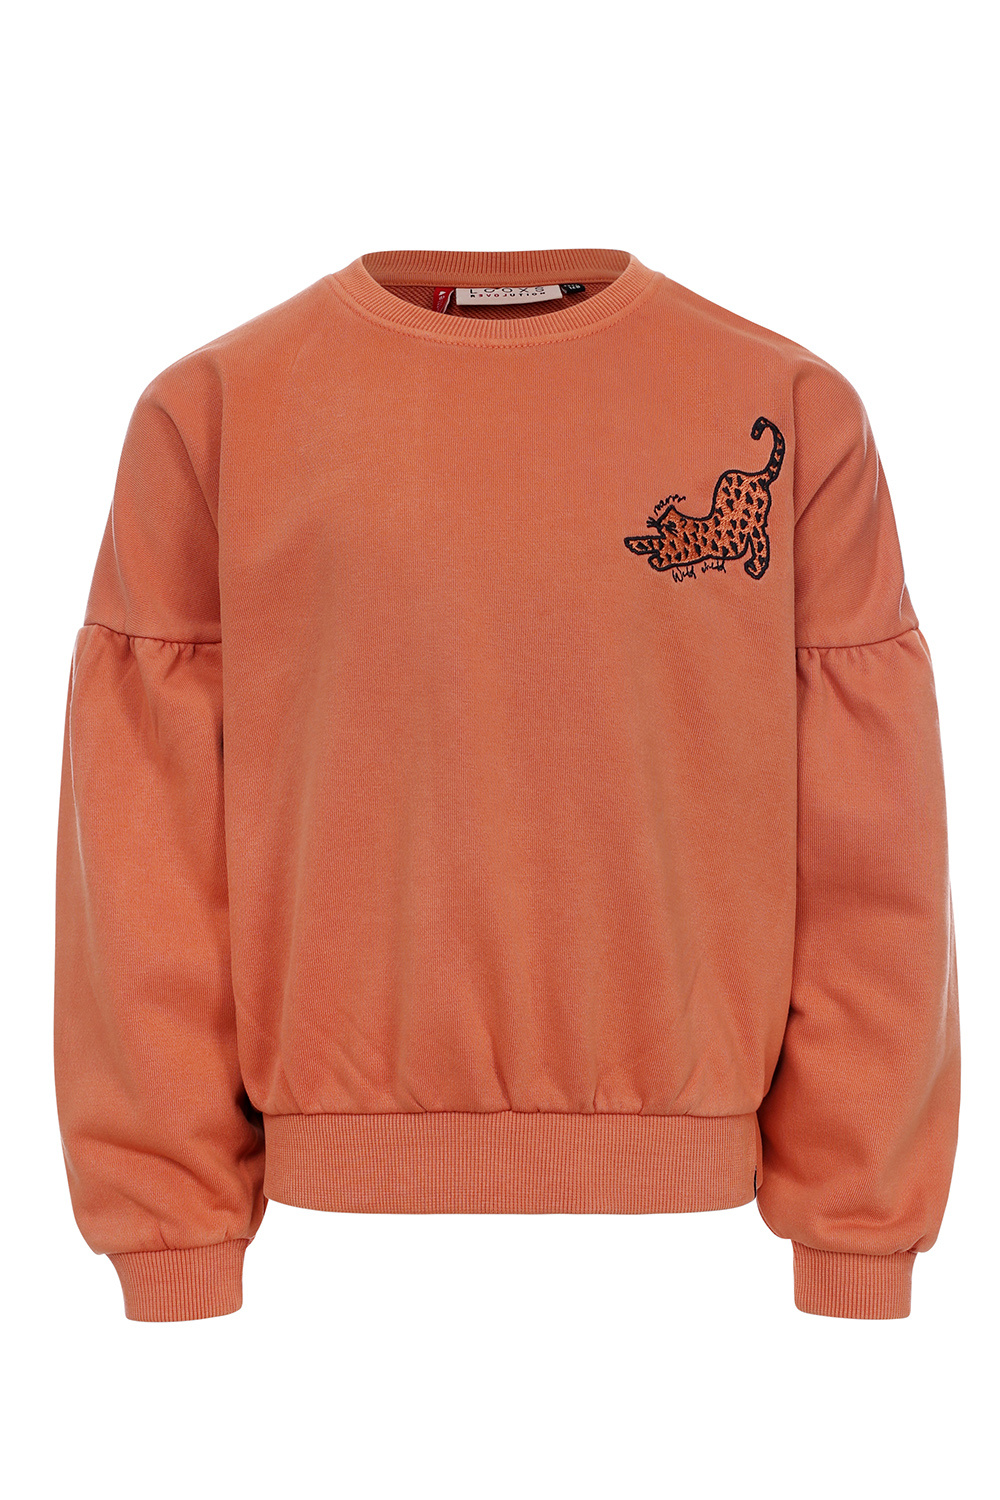 LOOXS Little Meisjes sweater - Warm Orange